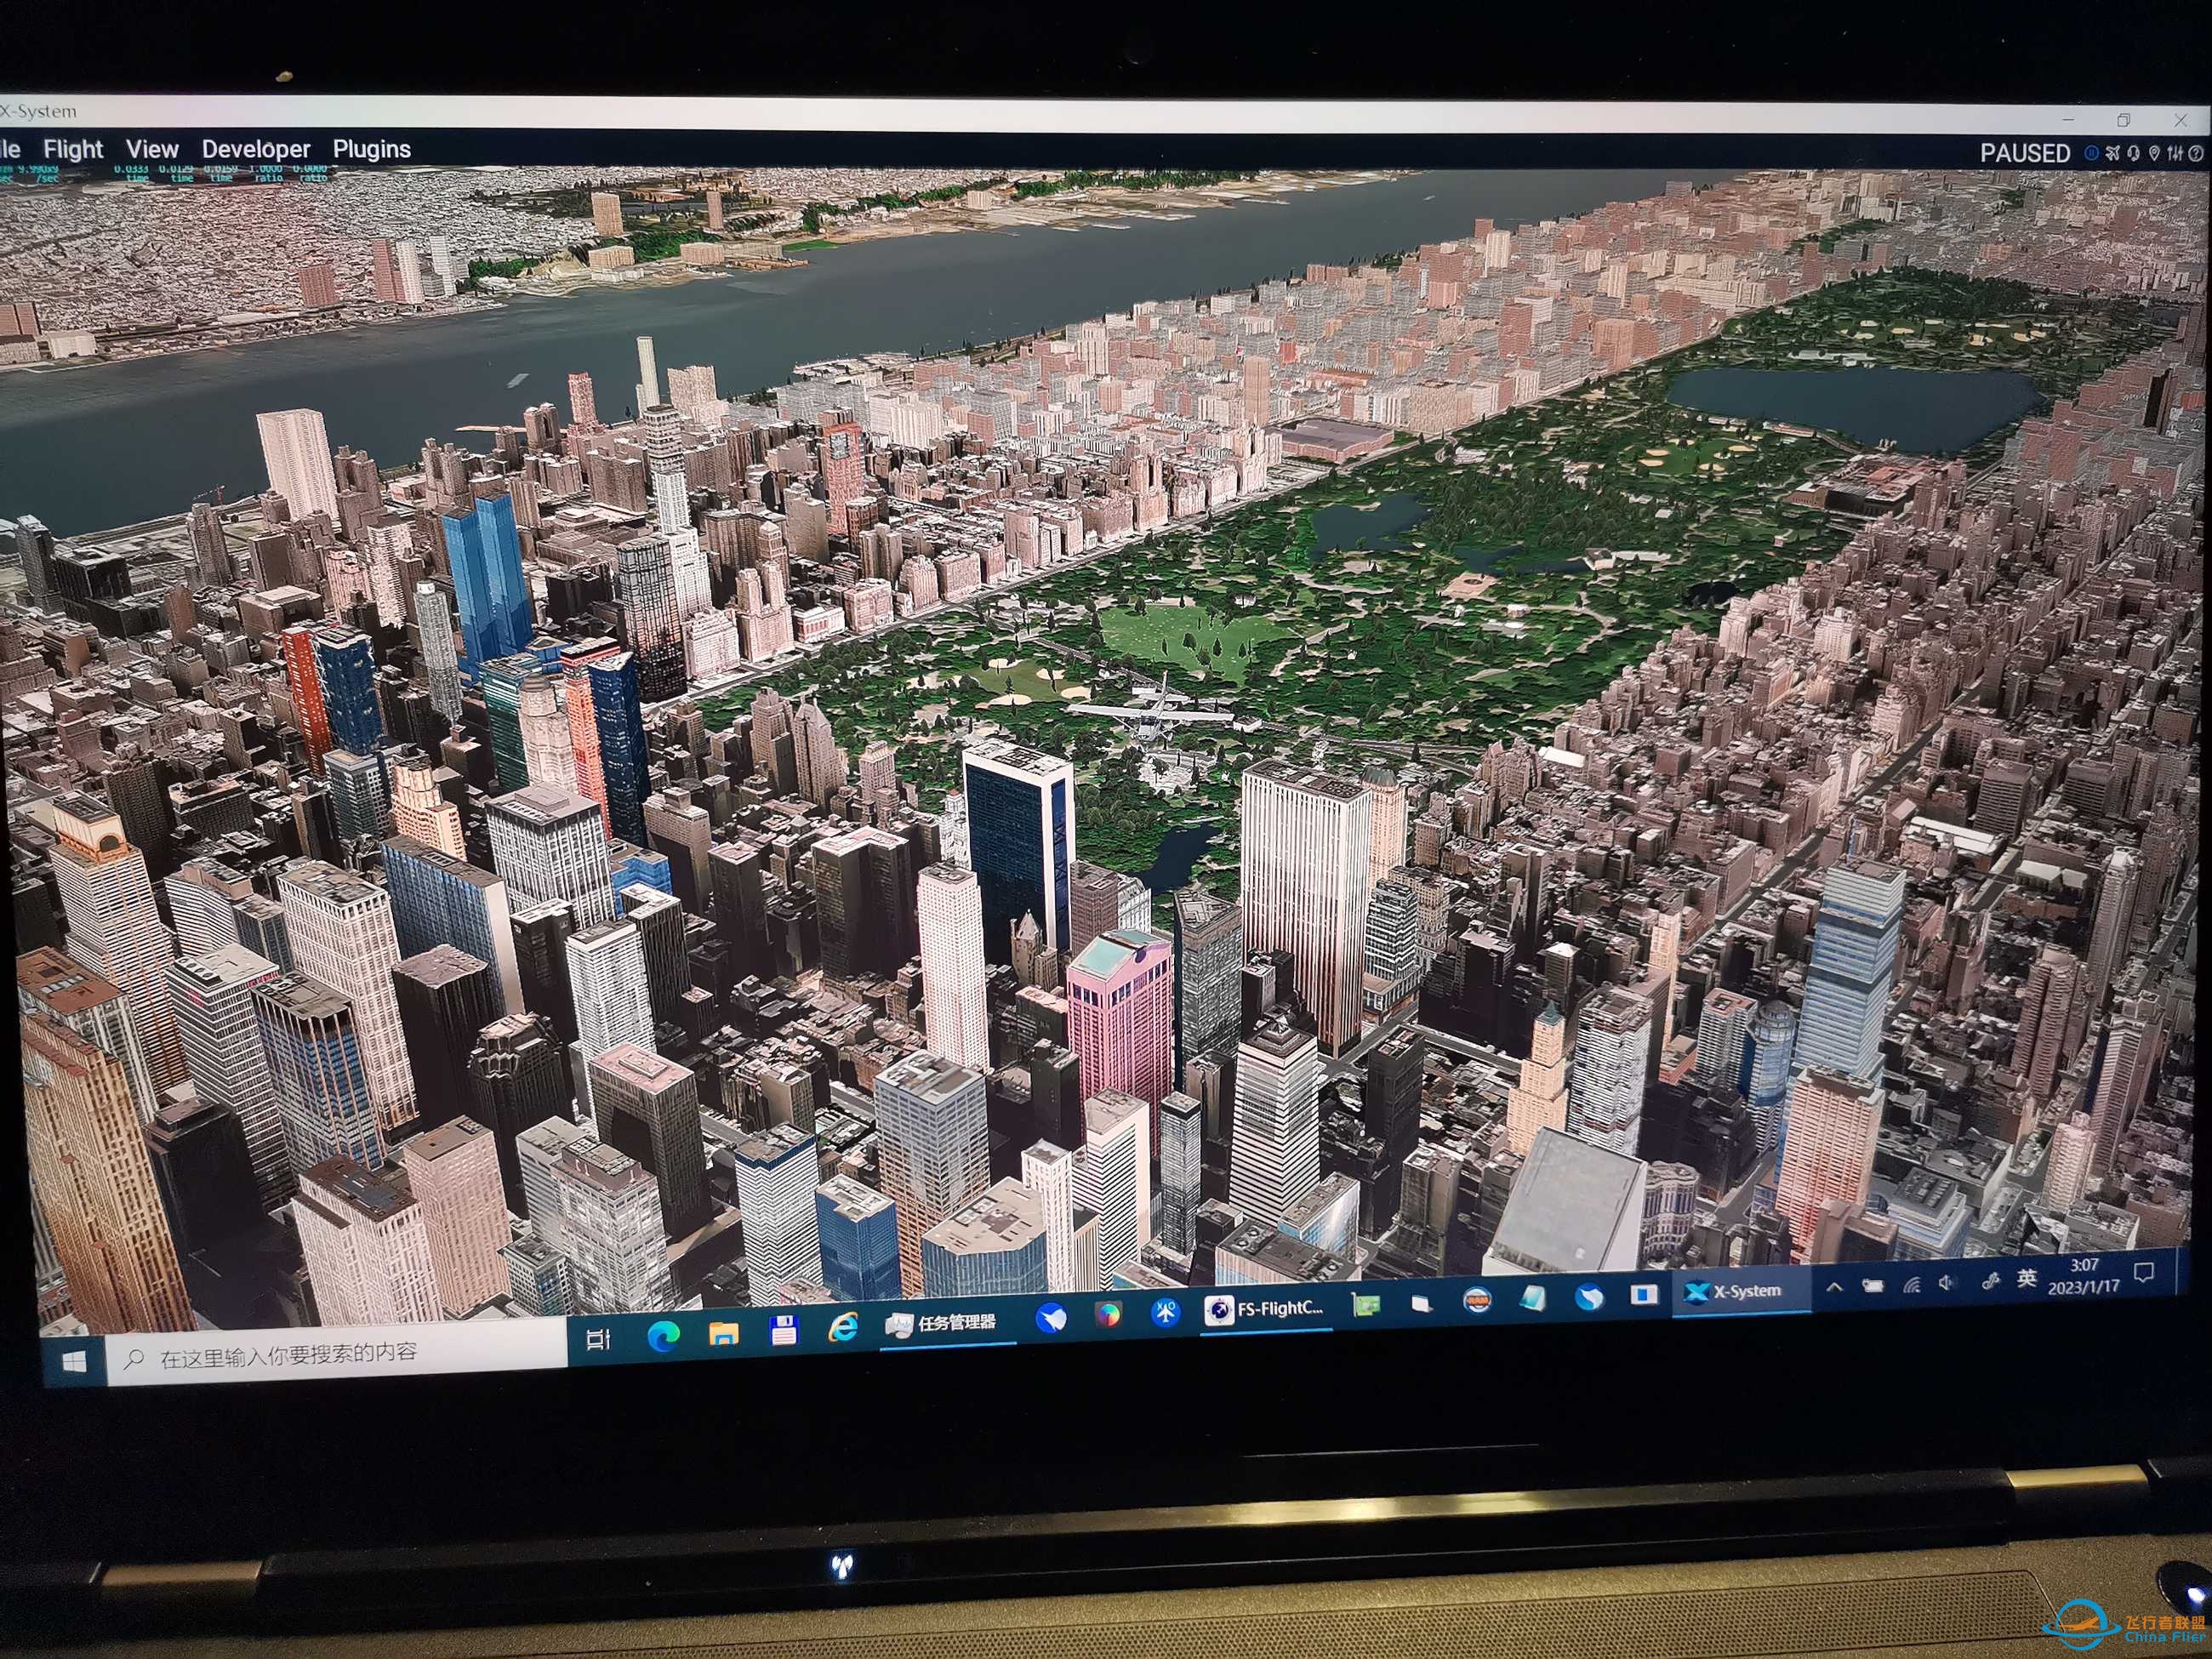 XP11插件地景还是很详细的-见纽约城市截图-2325 